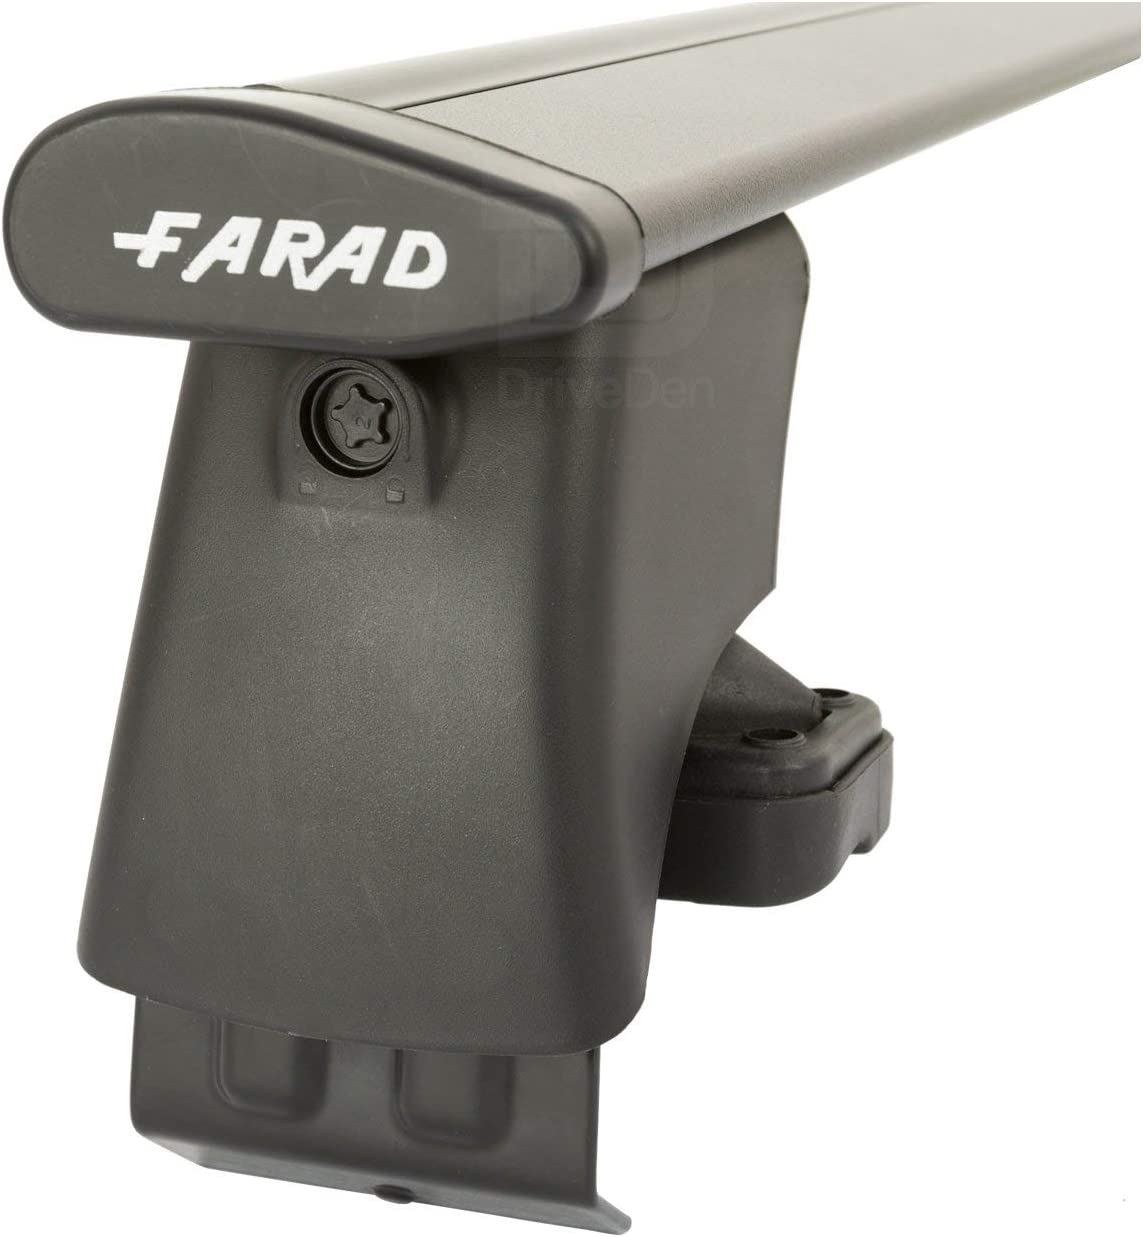 FARAD-Kit H2 per barre portatutto - Kia Picanto 2004-2011 (senza corrimano)